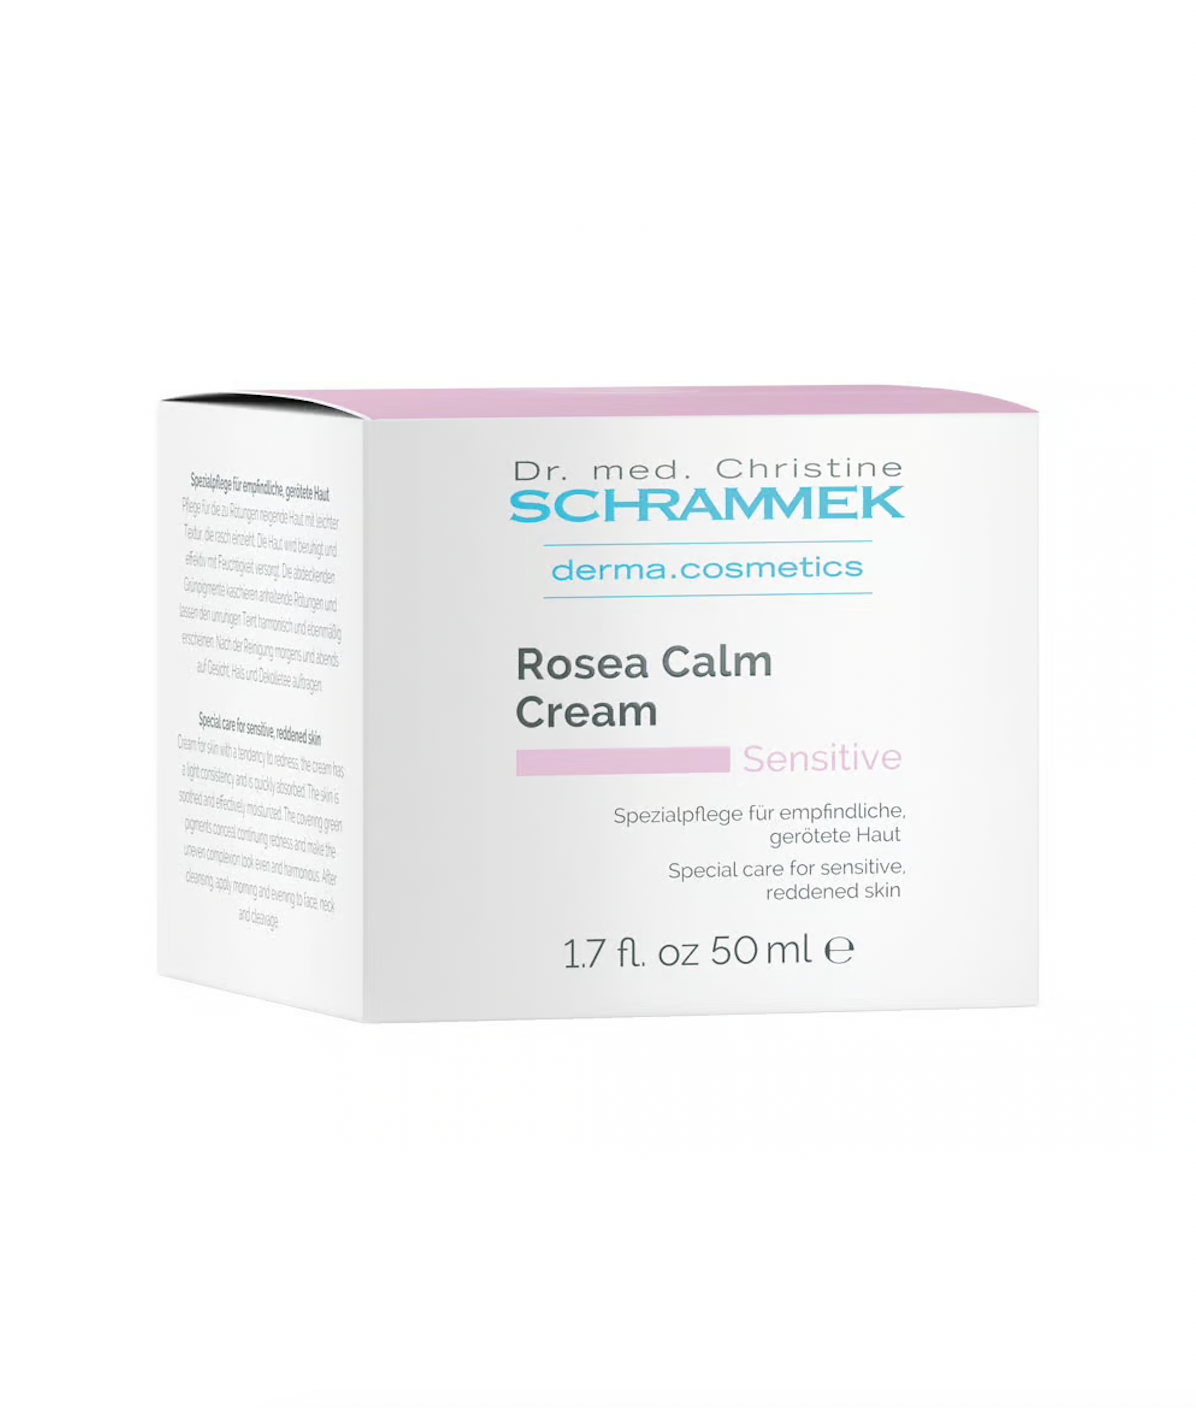 Rosea Calm Cream - 50ml